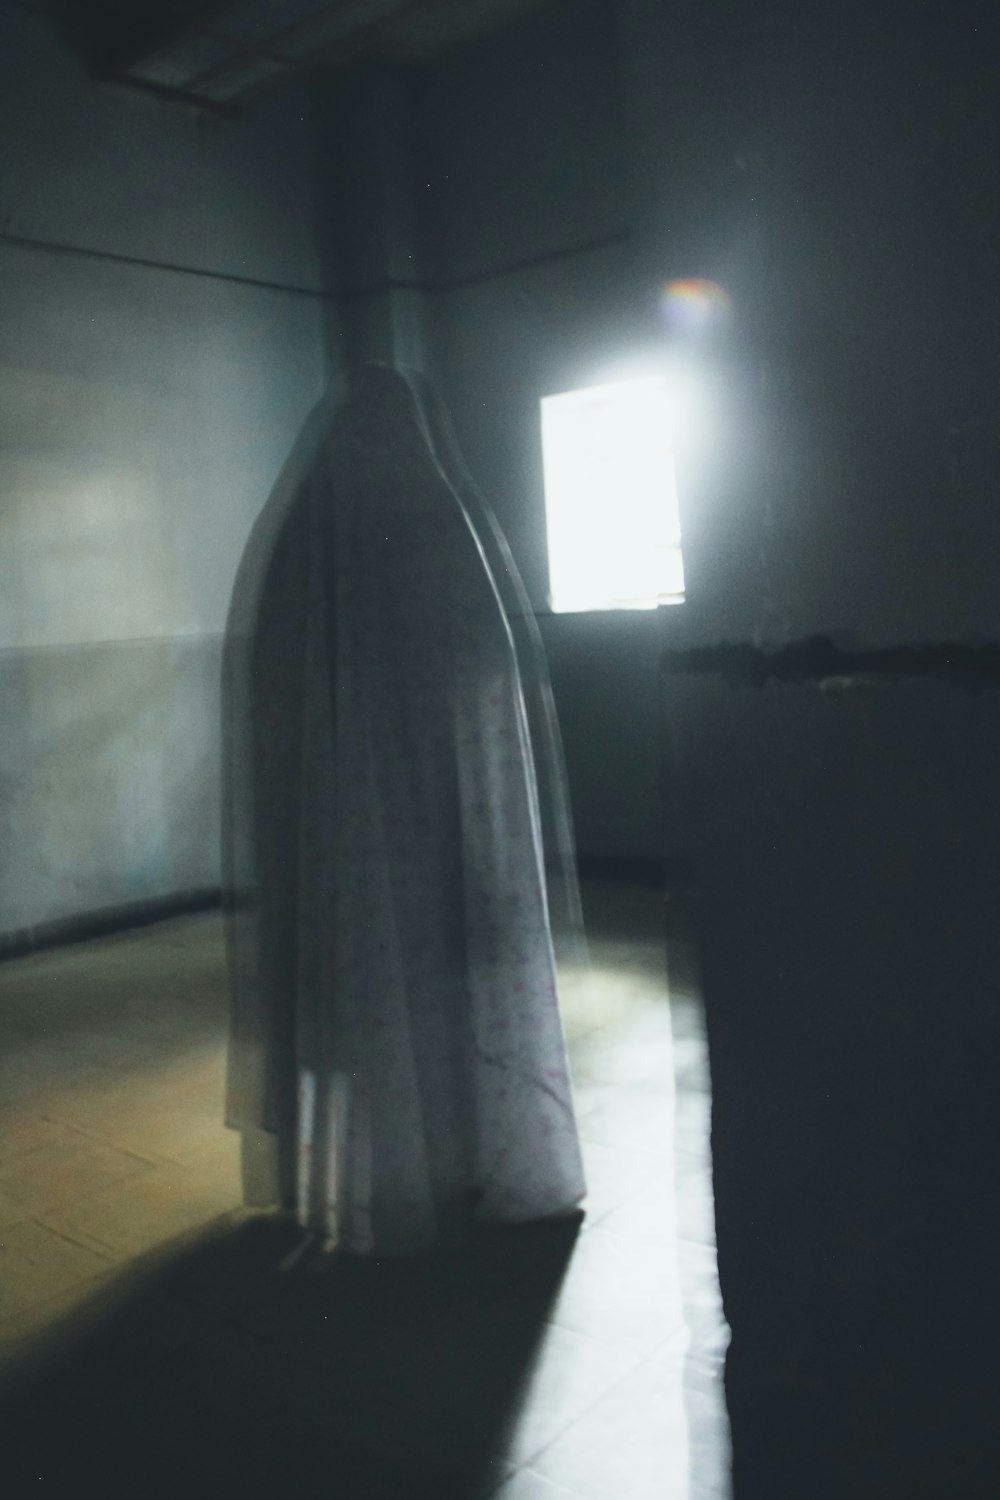 Une silhouette fantomatique debout dans une pièce sombre